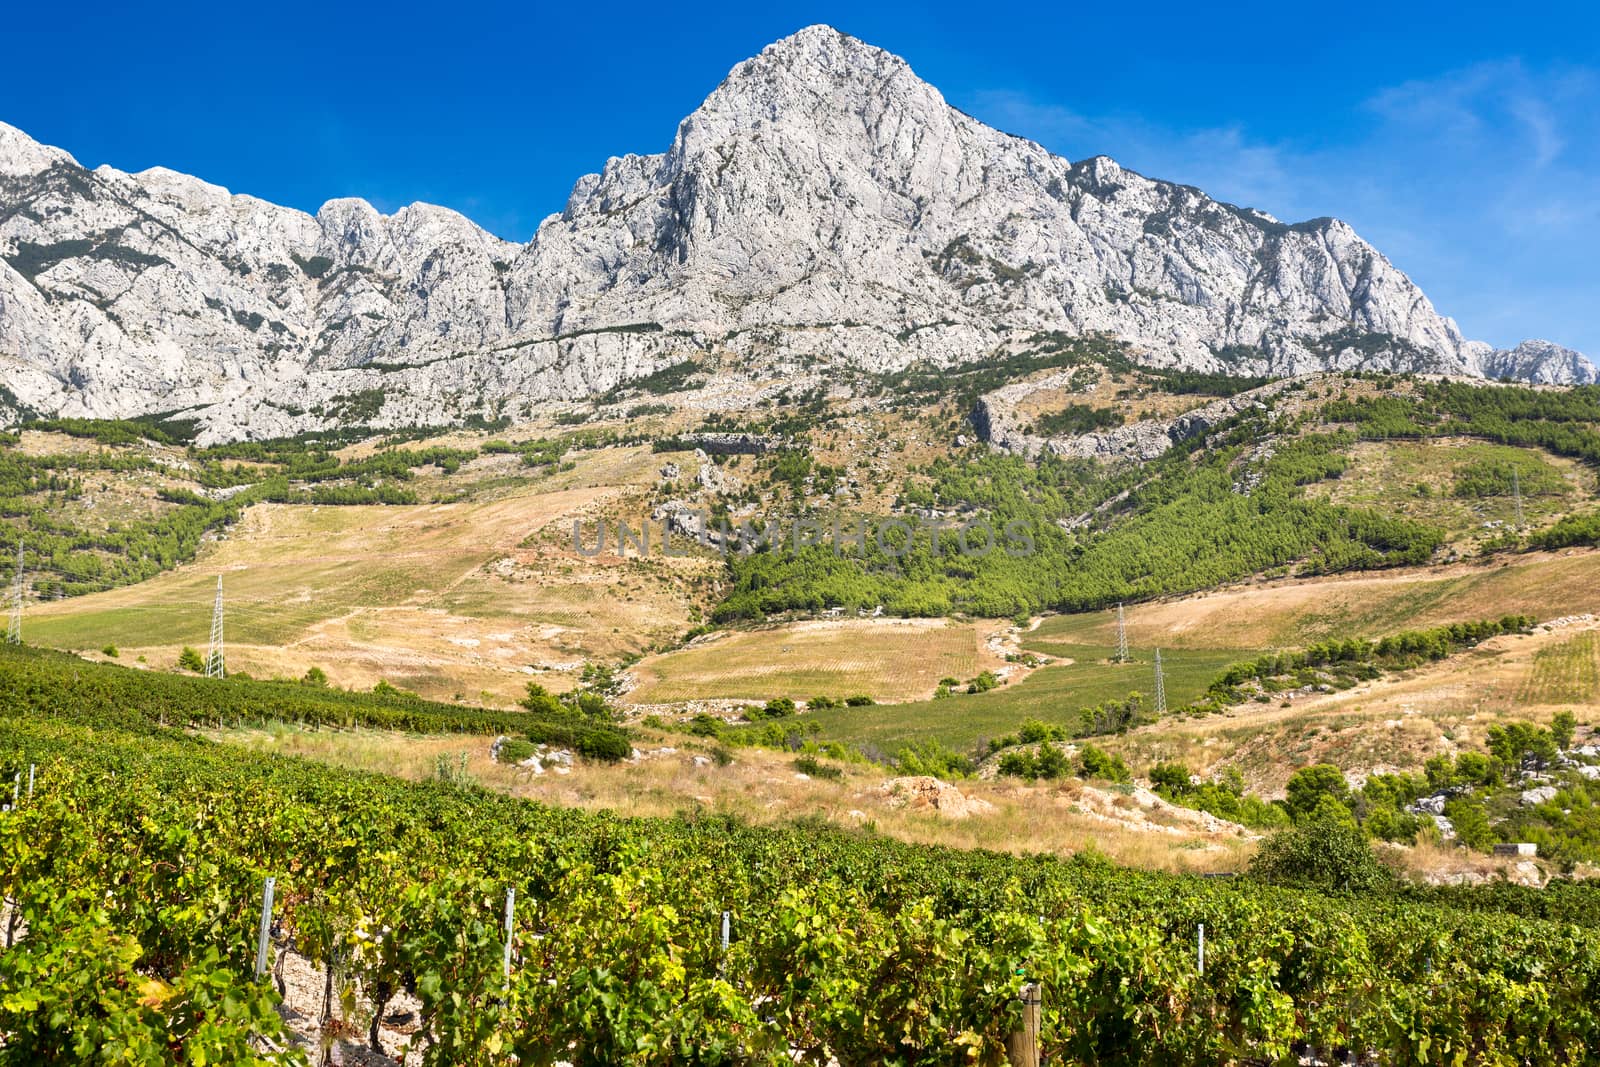 Vineyard with Biokovo near Adriatic Sea, Croatia by fisfra